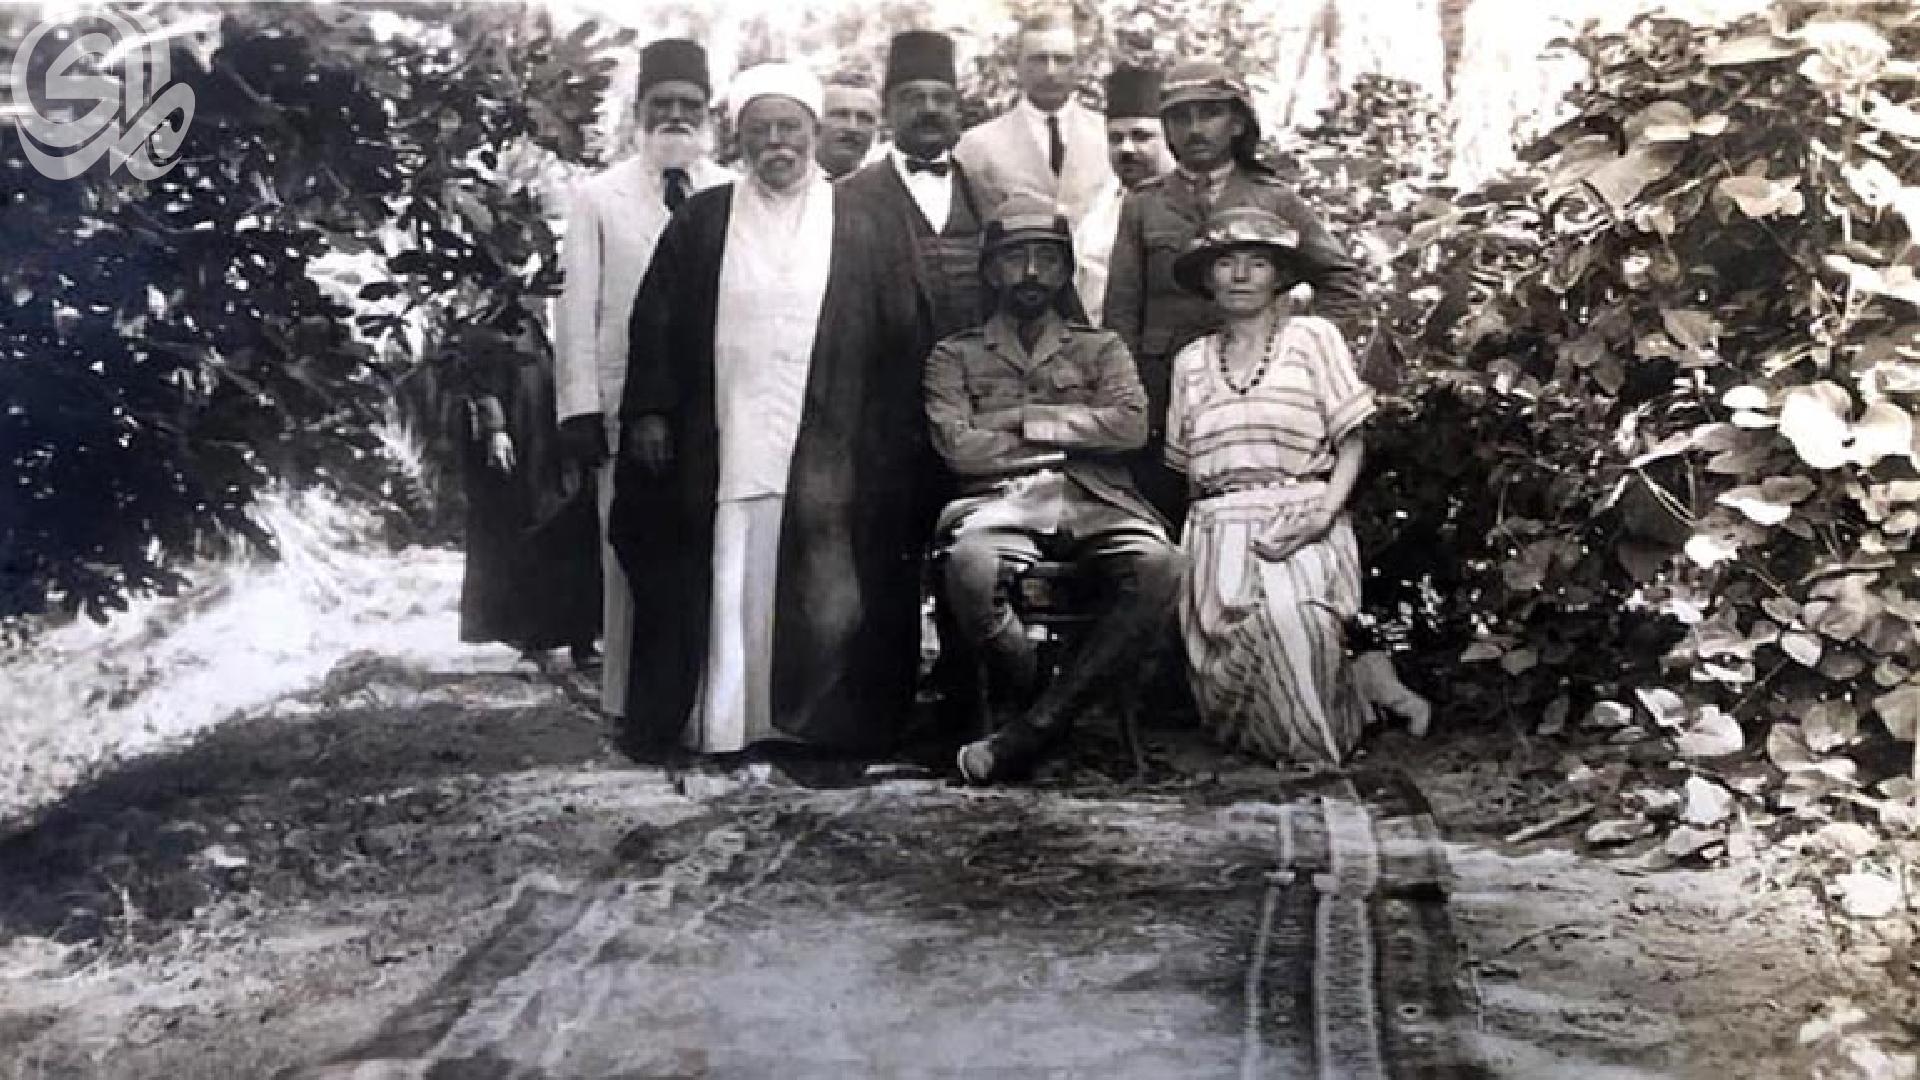 فيصل الأول قبل تتويجه..عندما وصل الأمير فيصل الى بغداد سنة 1921